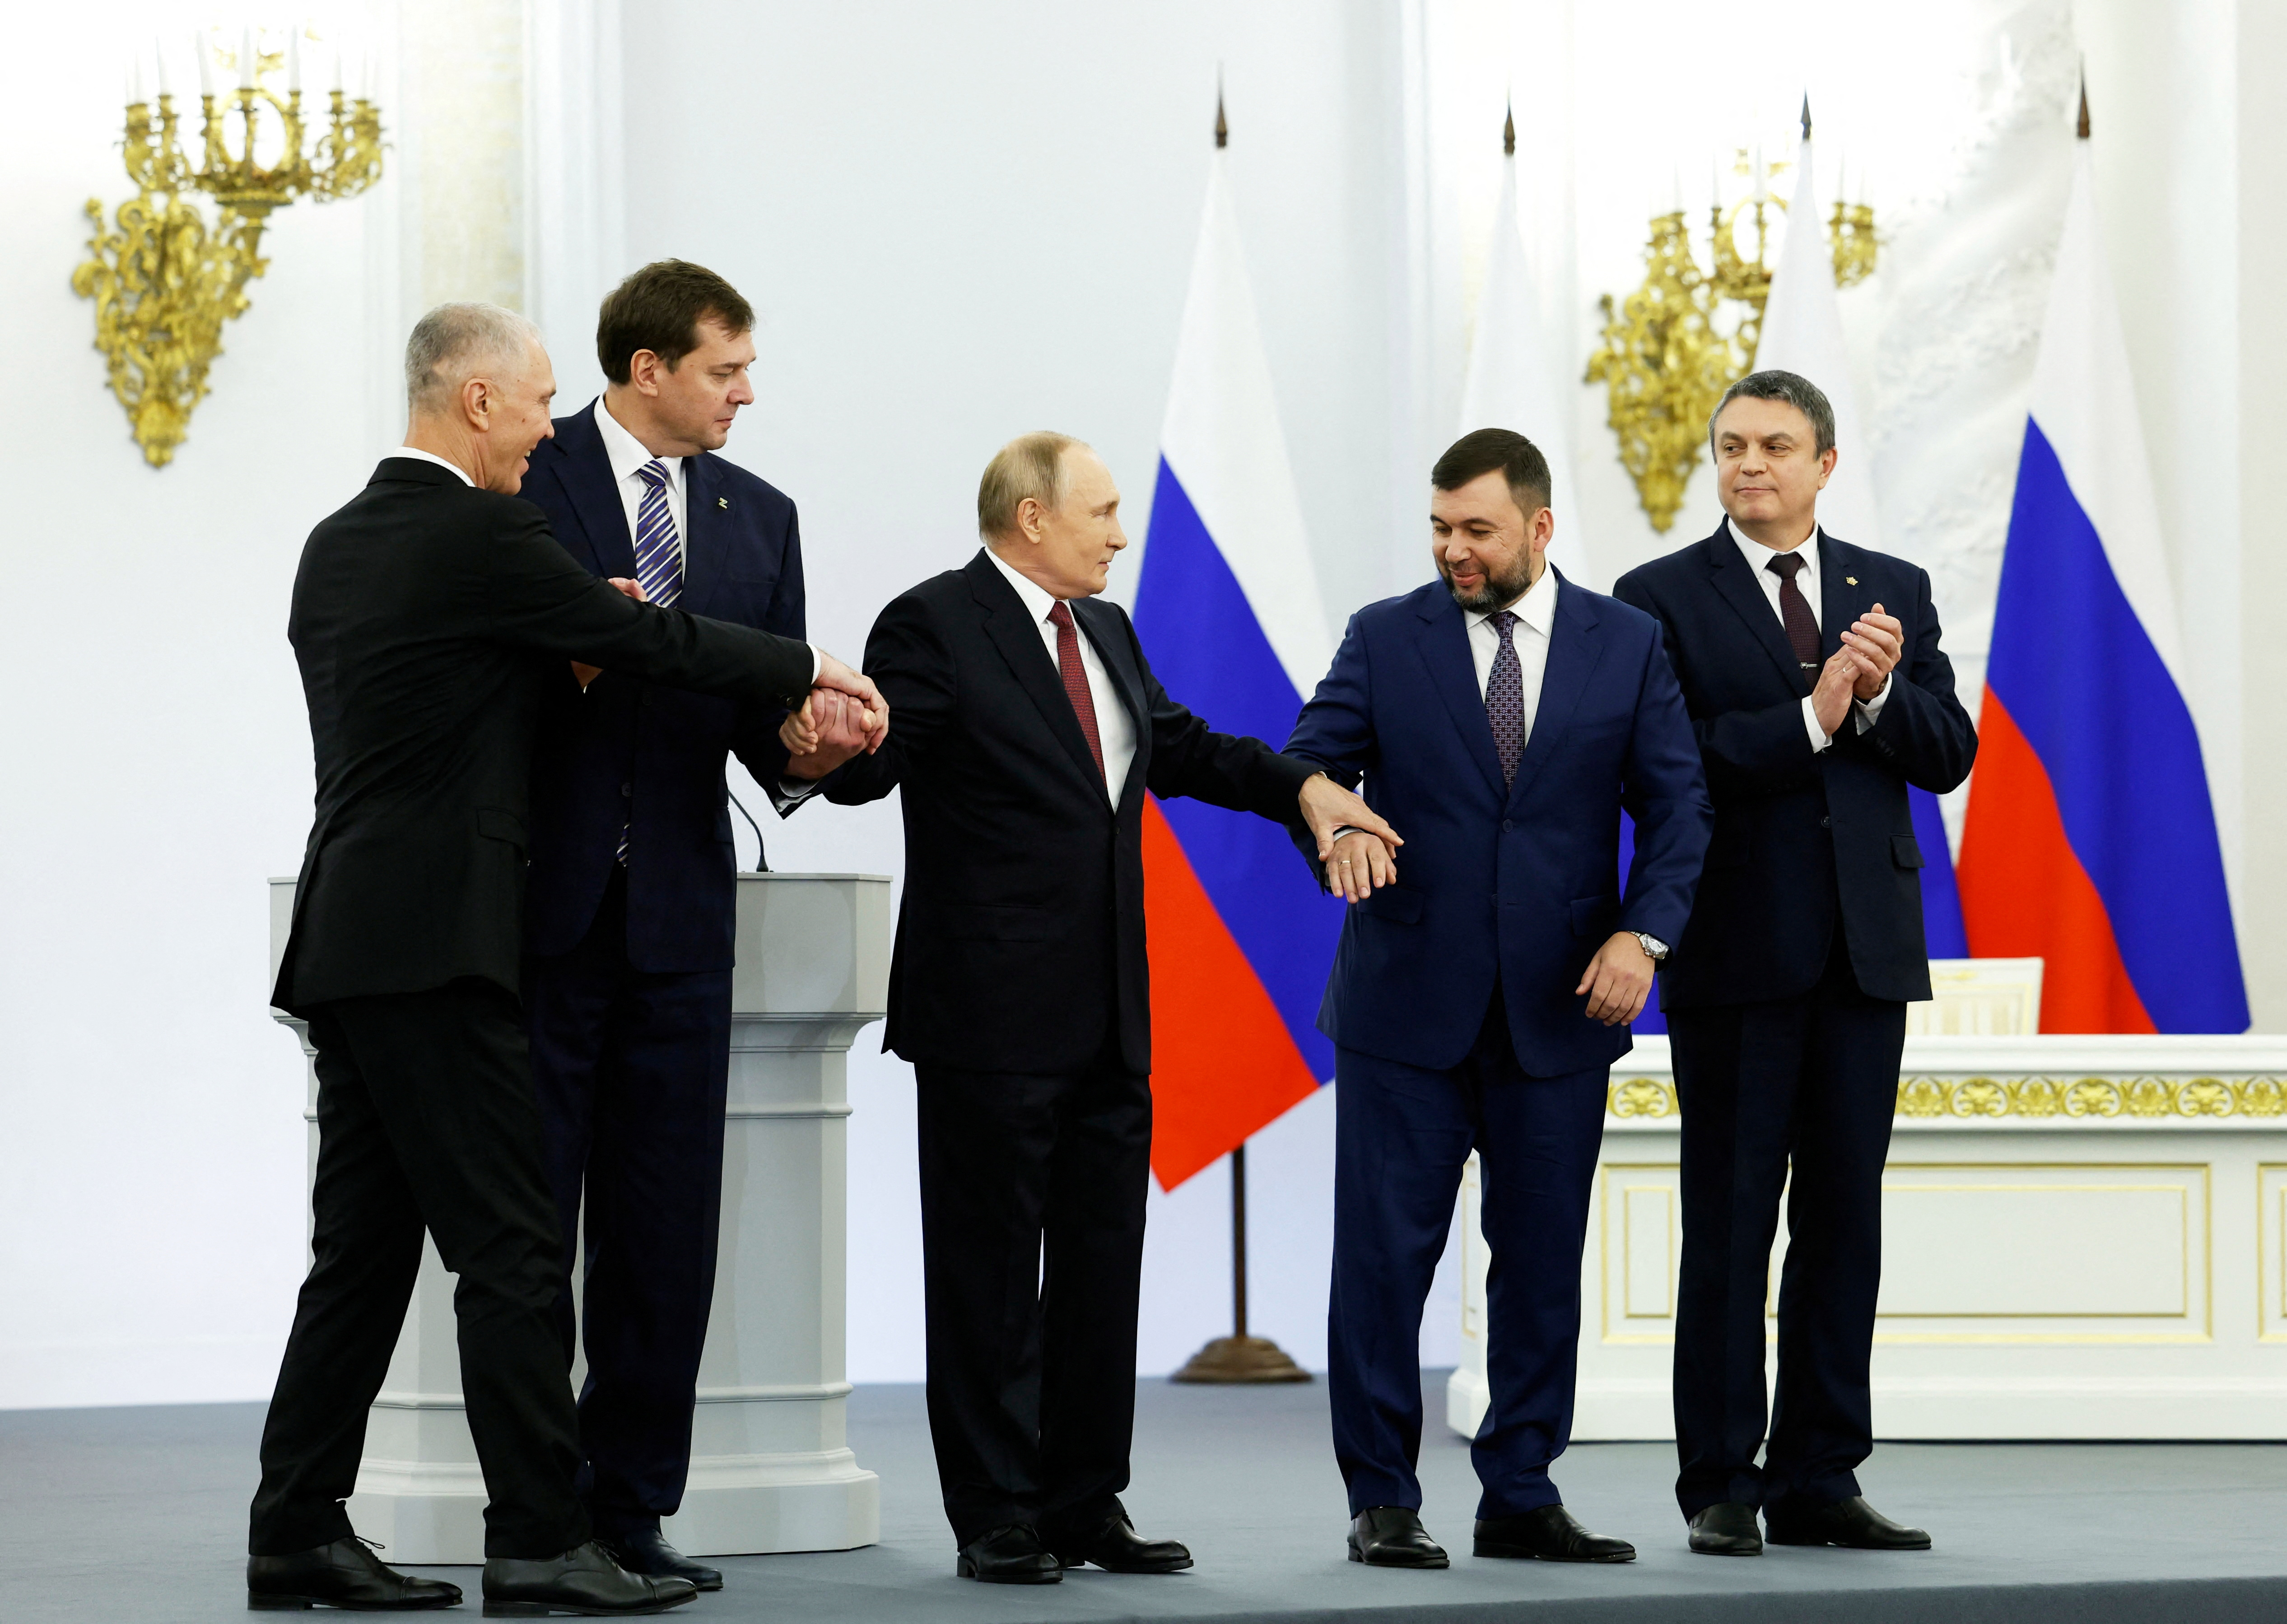 Putin formalizó la anexión de Zaporizhzhia, junto a otras cuatro regiones ocupadas en Ucrania, la semana pasada